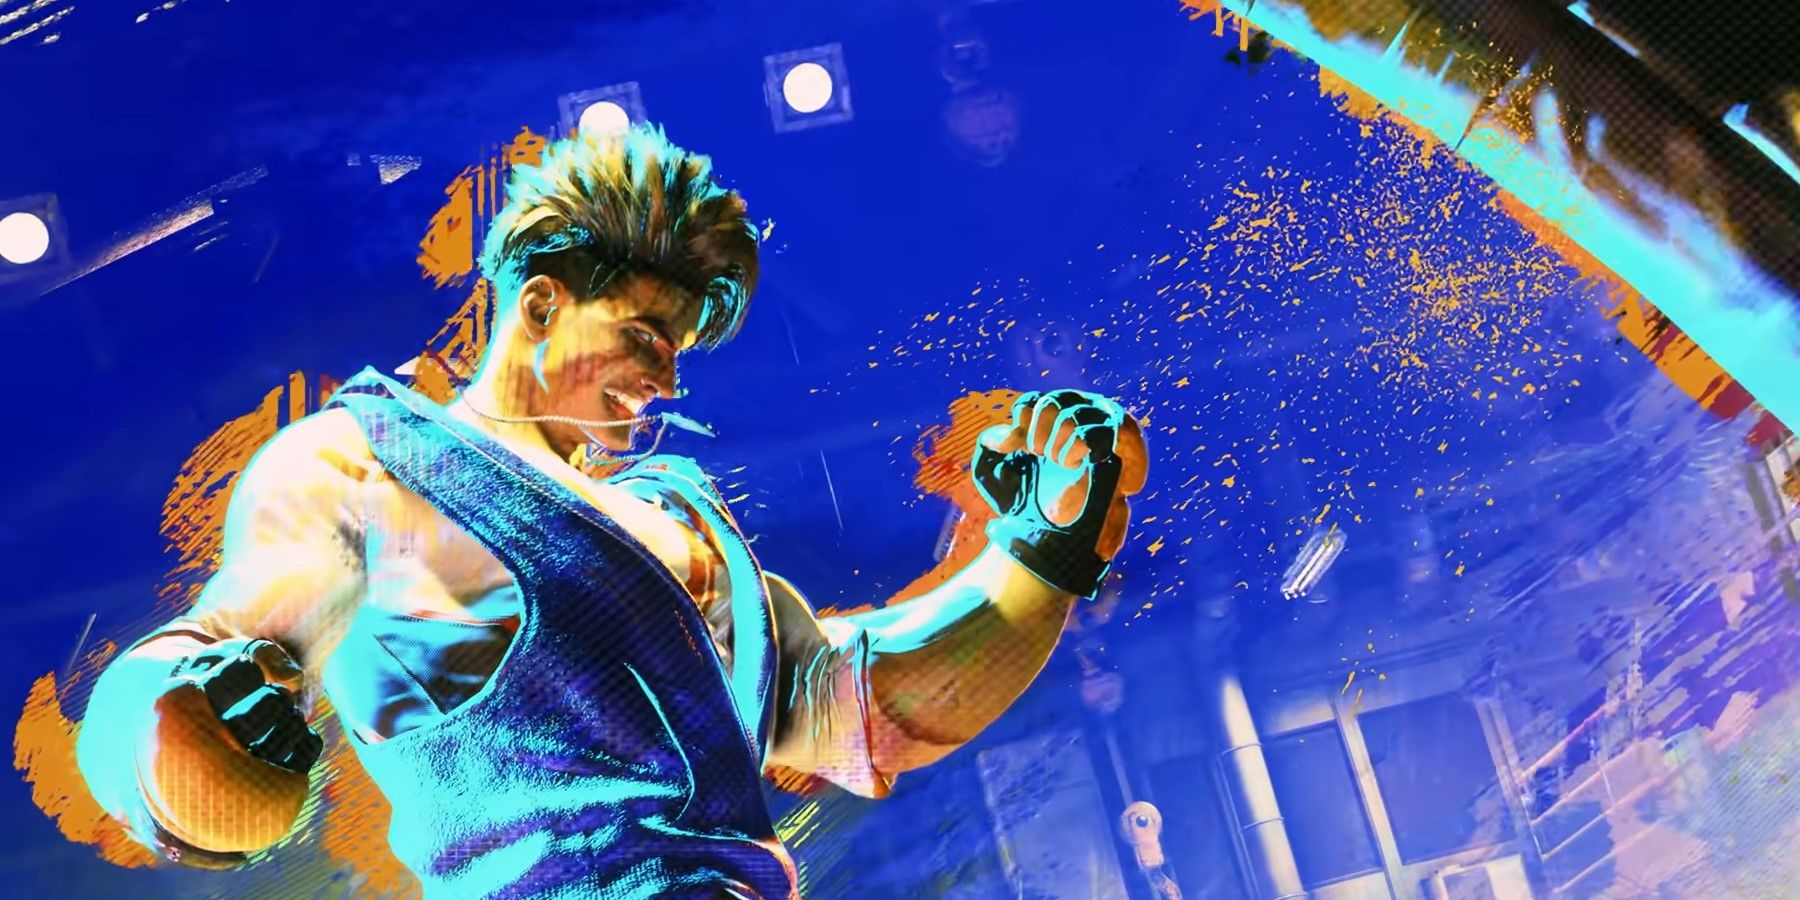 Divulgados detalhes, preços e datas dos DLCs de Street Fighter x